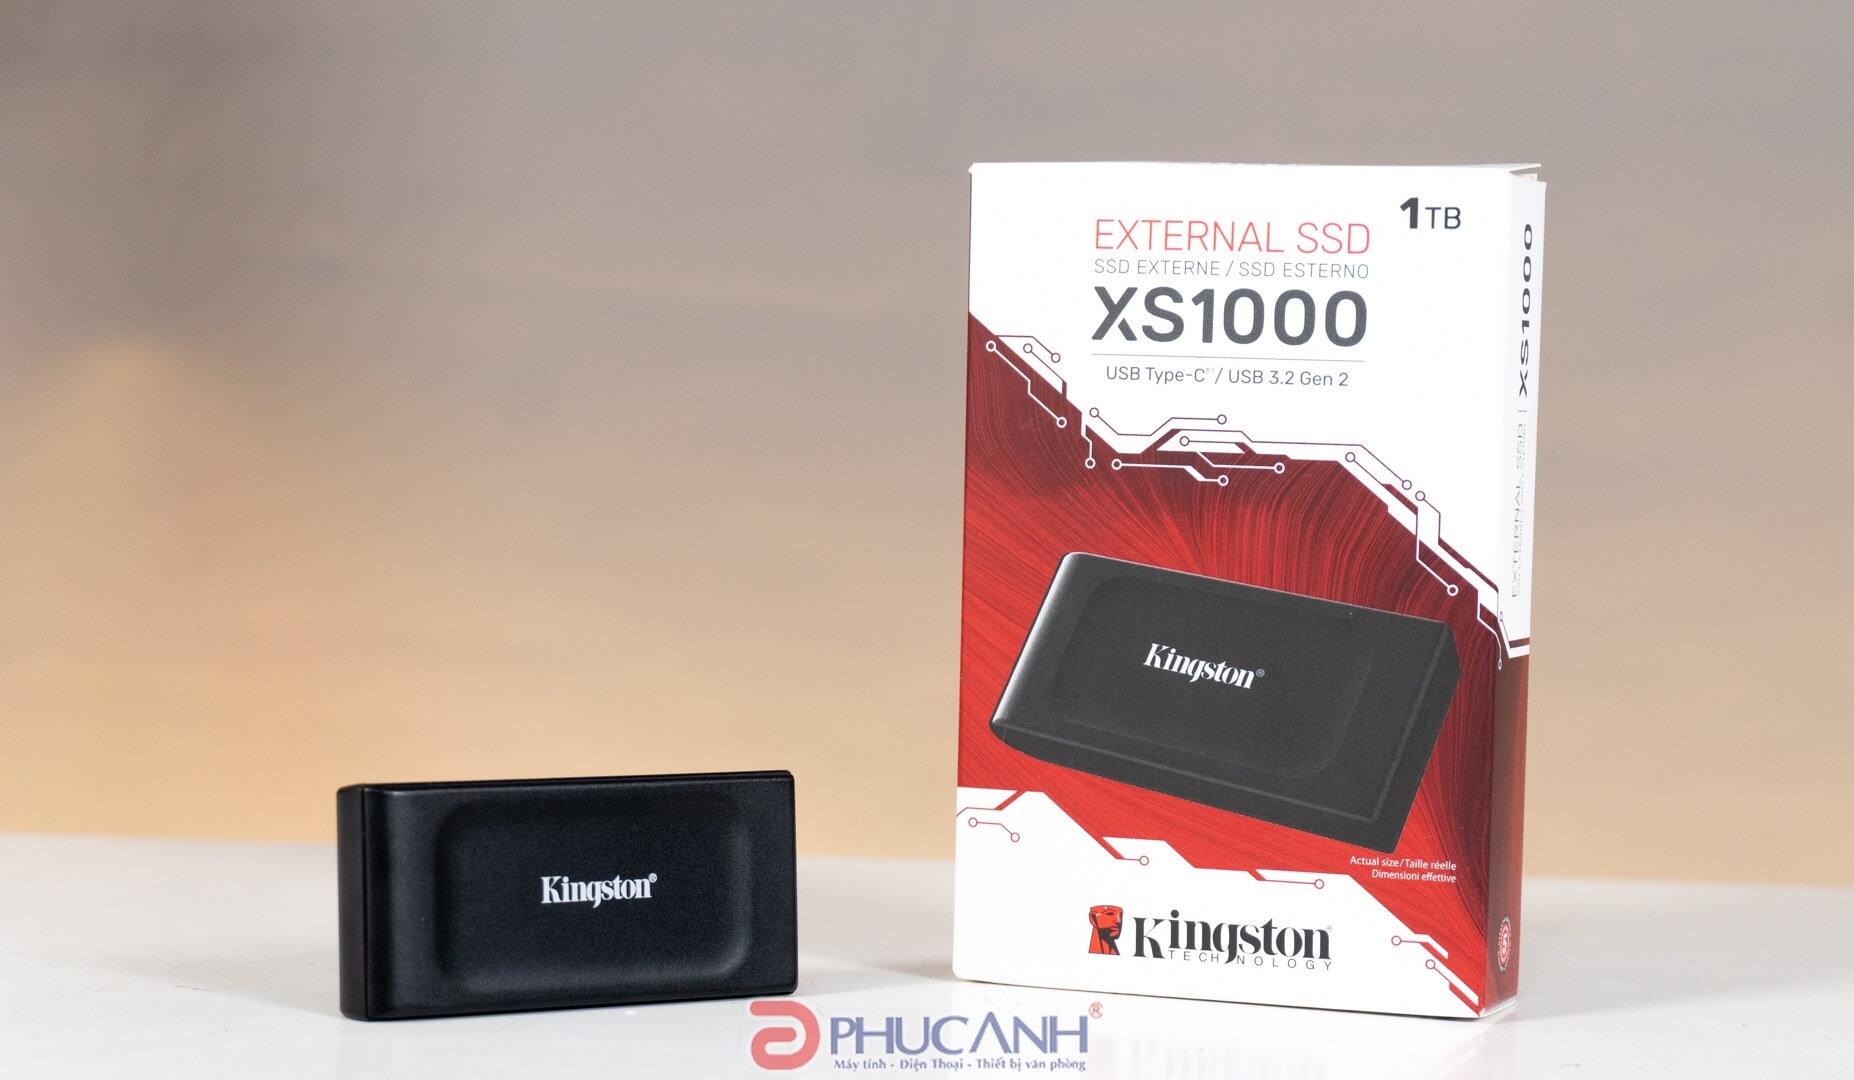 Kingston XS1000 SSD 1TB